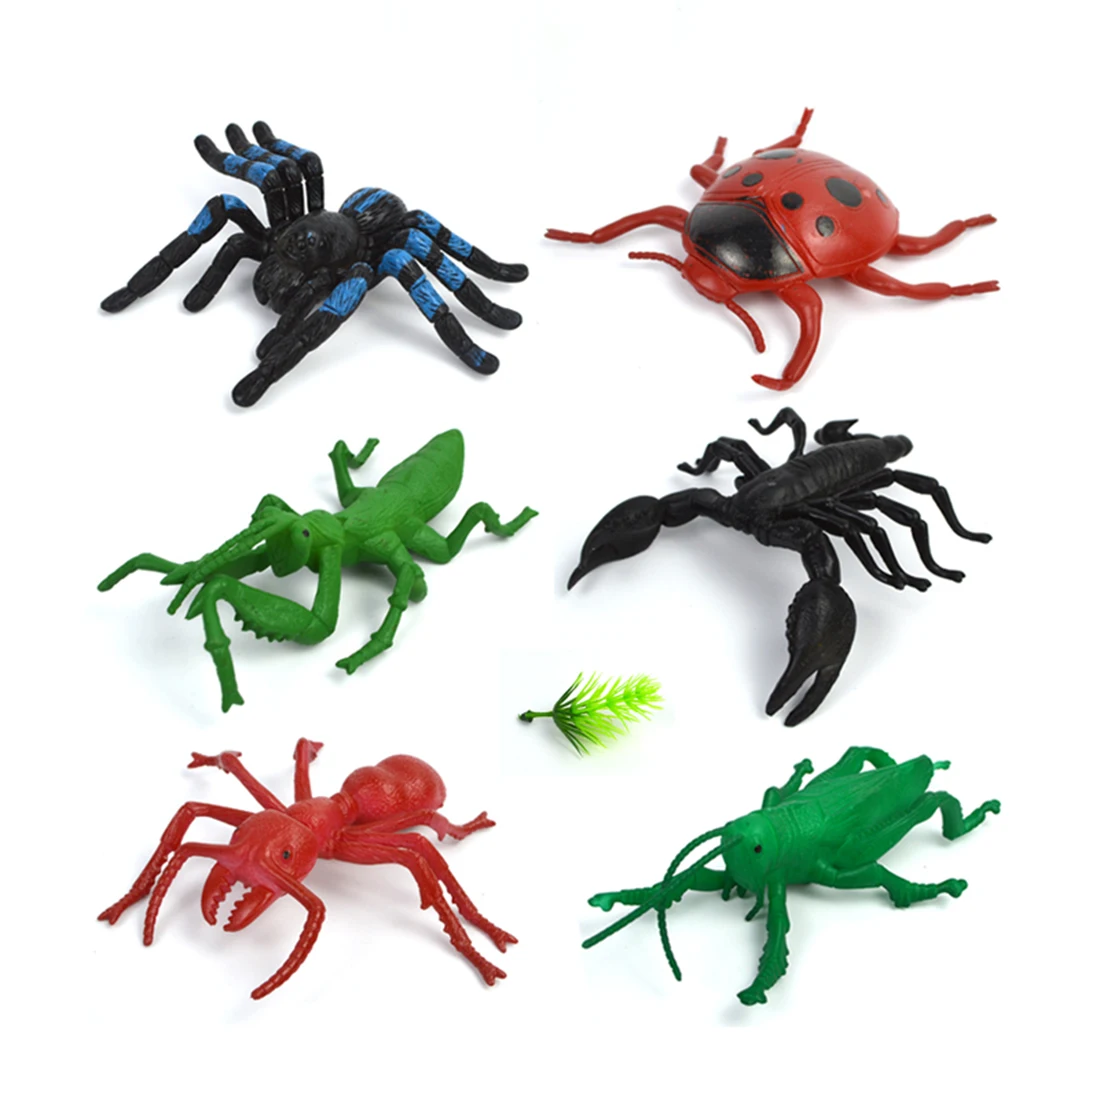 Прочный 6 видов стилей большой размеры Моделирование Статический фигурки насекомых игрушечные лошадки для обучения детей природа Рожде